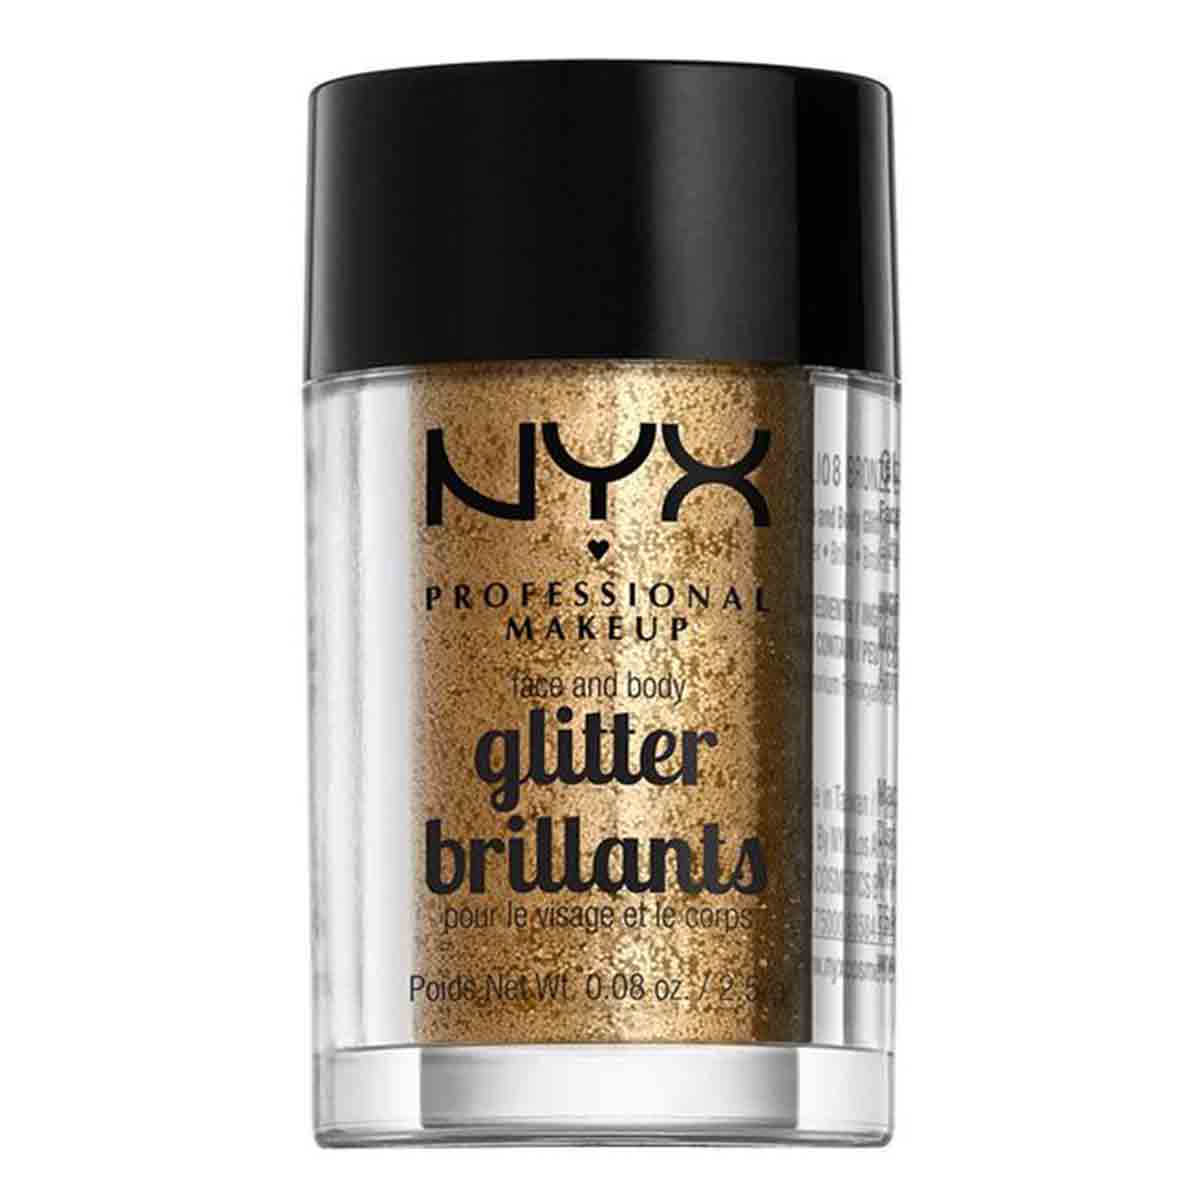  پودر براق کننده (گلیتر) صورت و بدن نیکس NYX مدل glitter brillants شماره 08 وزن 2.5 گرم 